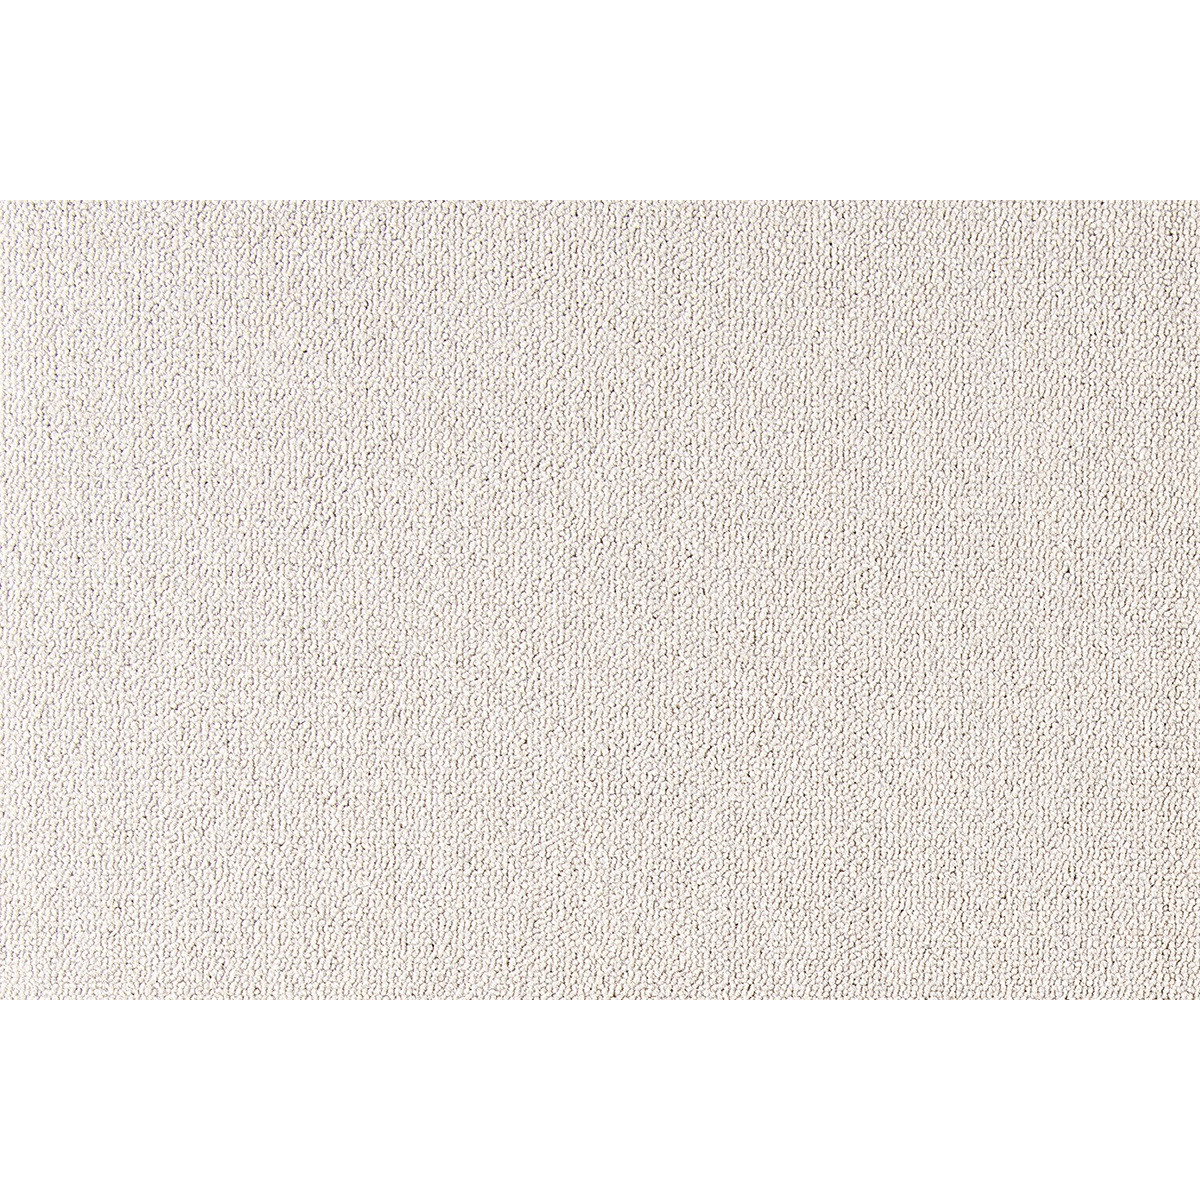 Metrážny koberec Cobalt SDN 64010 - AB krémový, záťažový